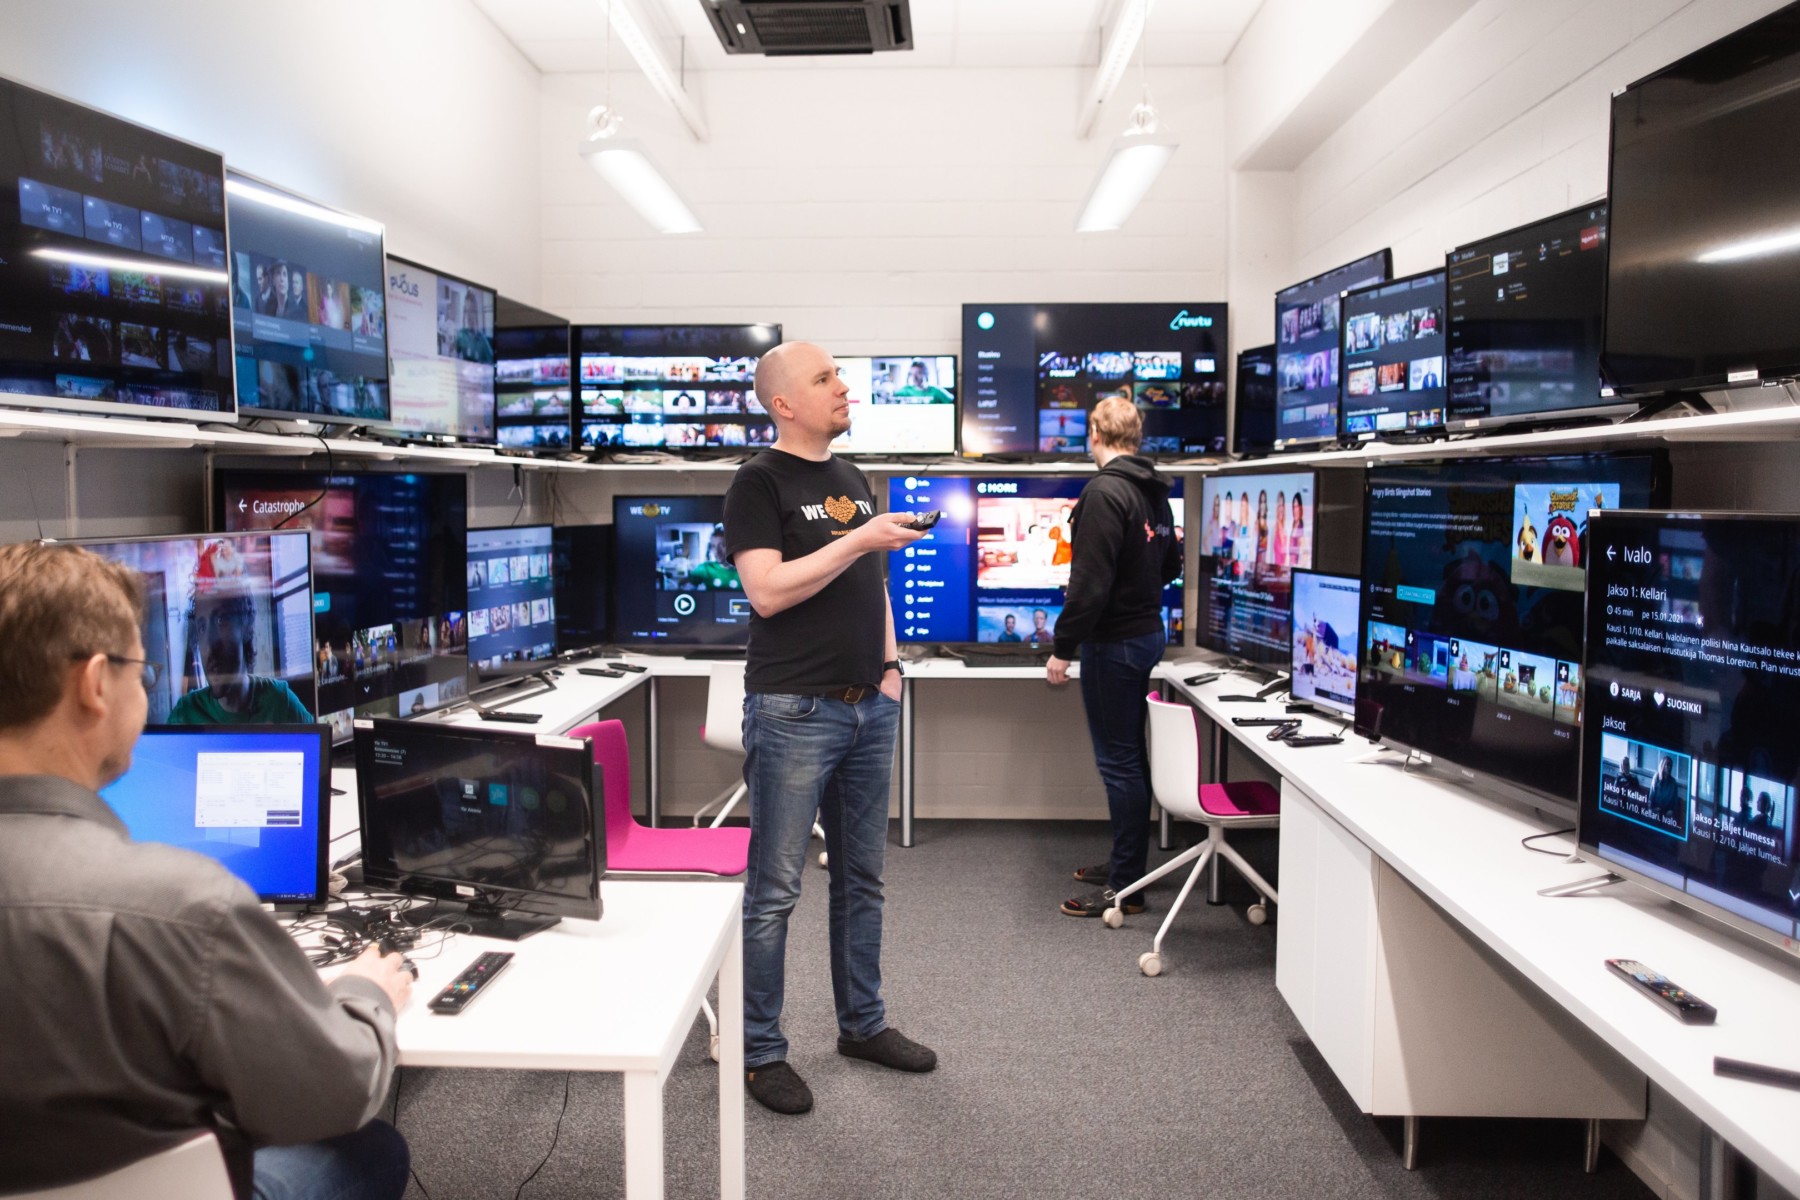 Plusieurs hommes sont en train de travailler dans une salle dont les étagères sont entièrement occupées par toutes sortes d’écrans de télévision.